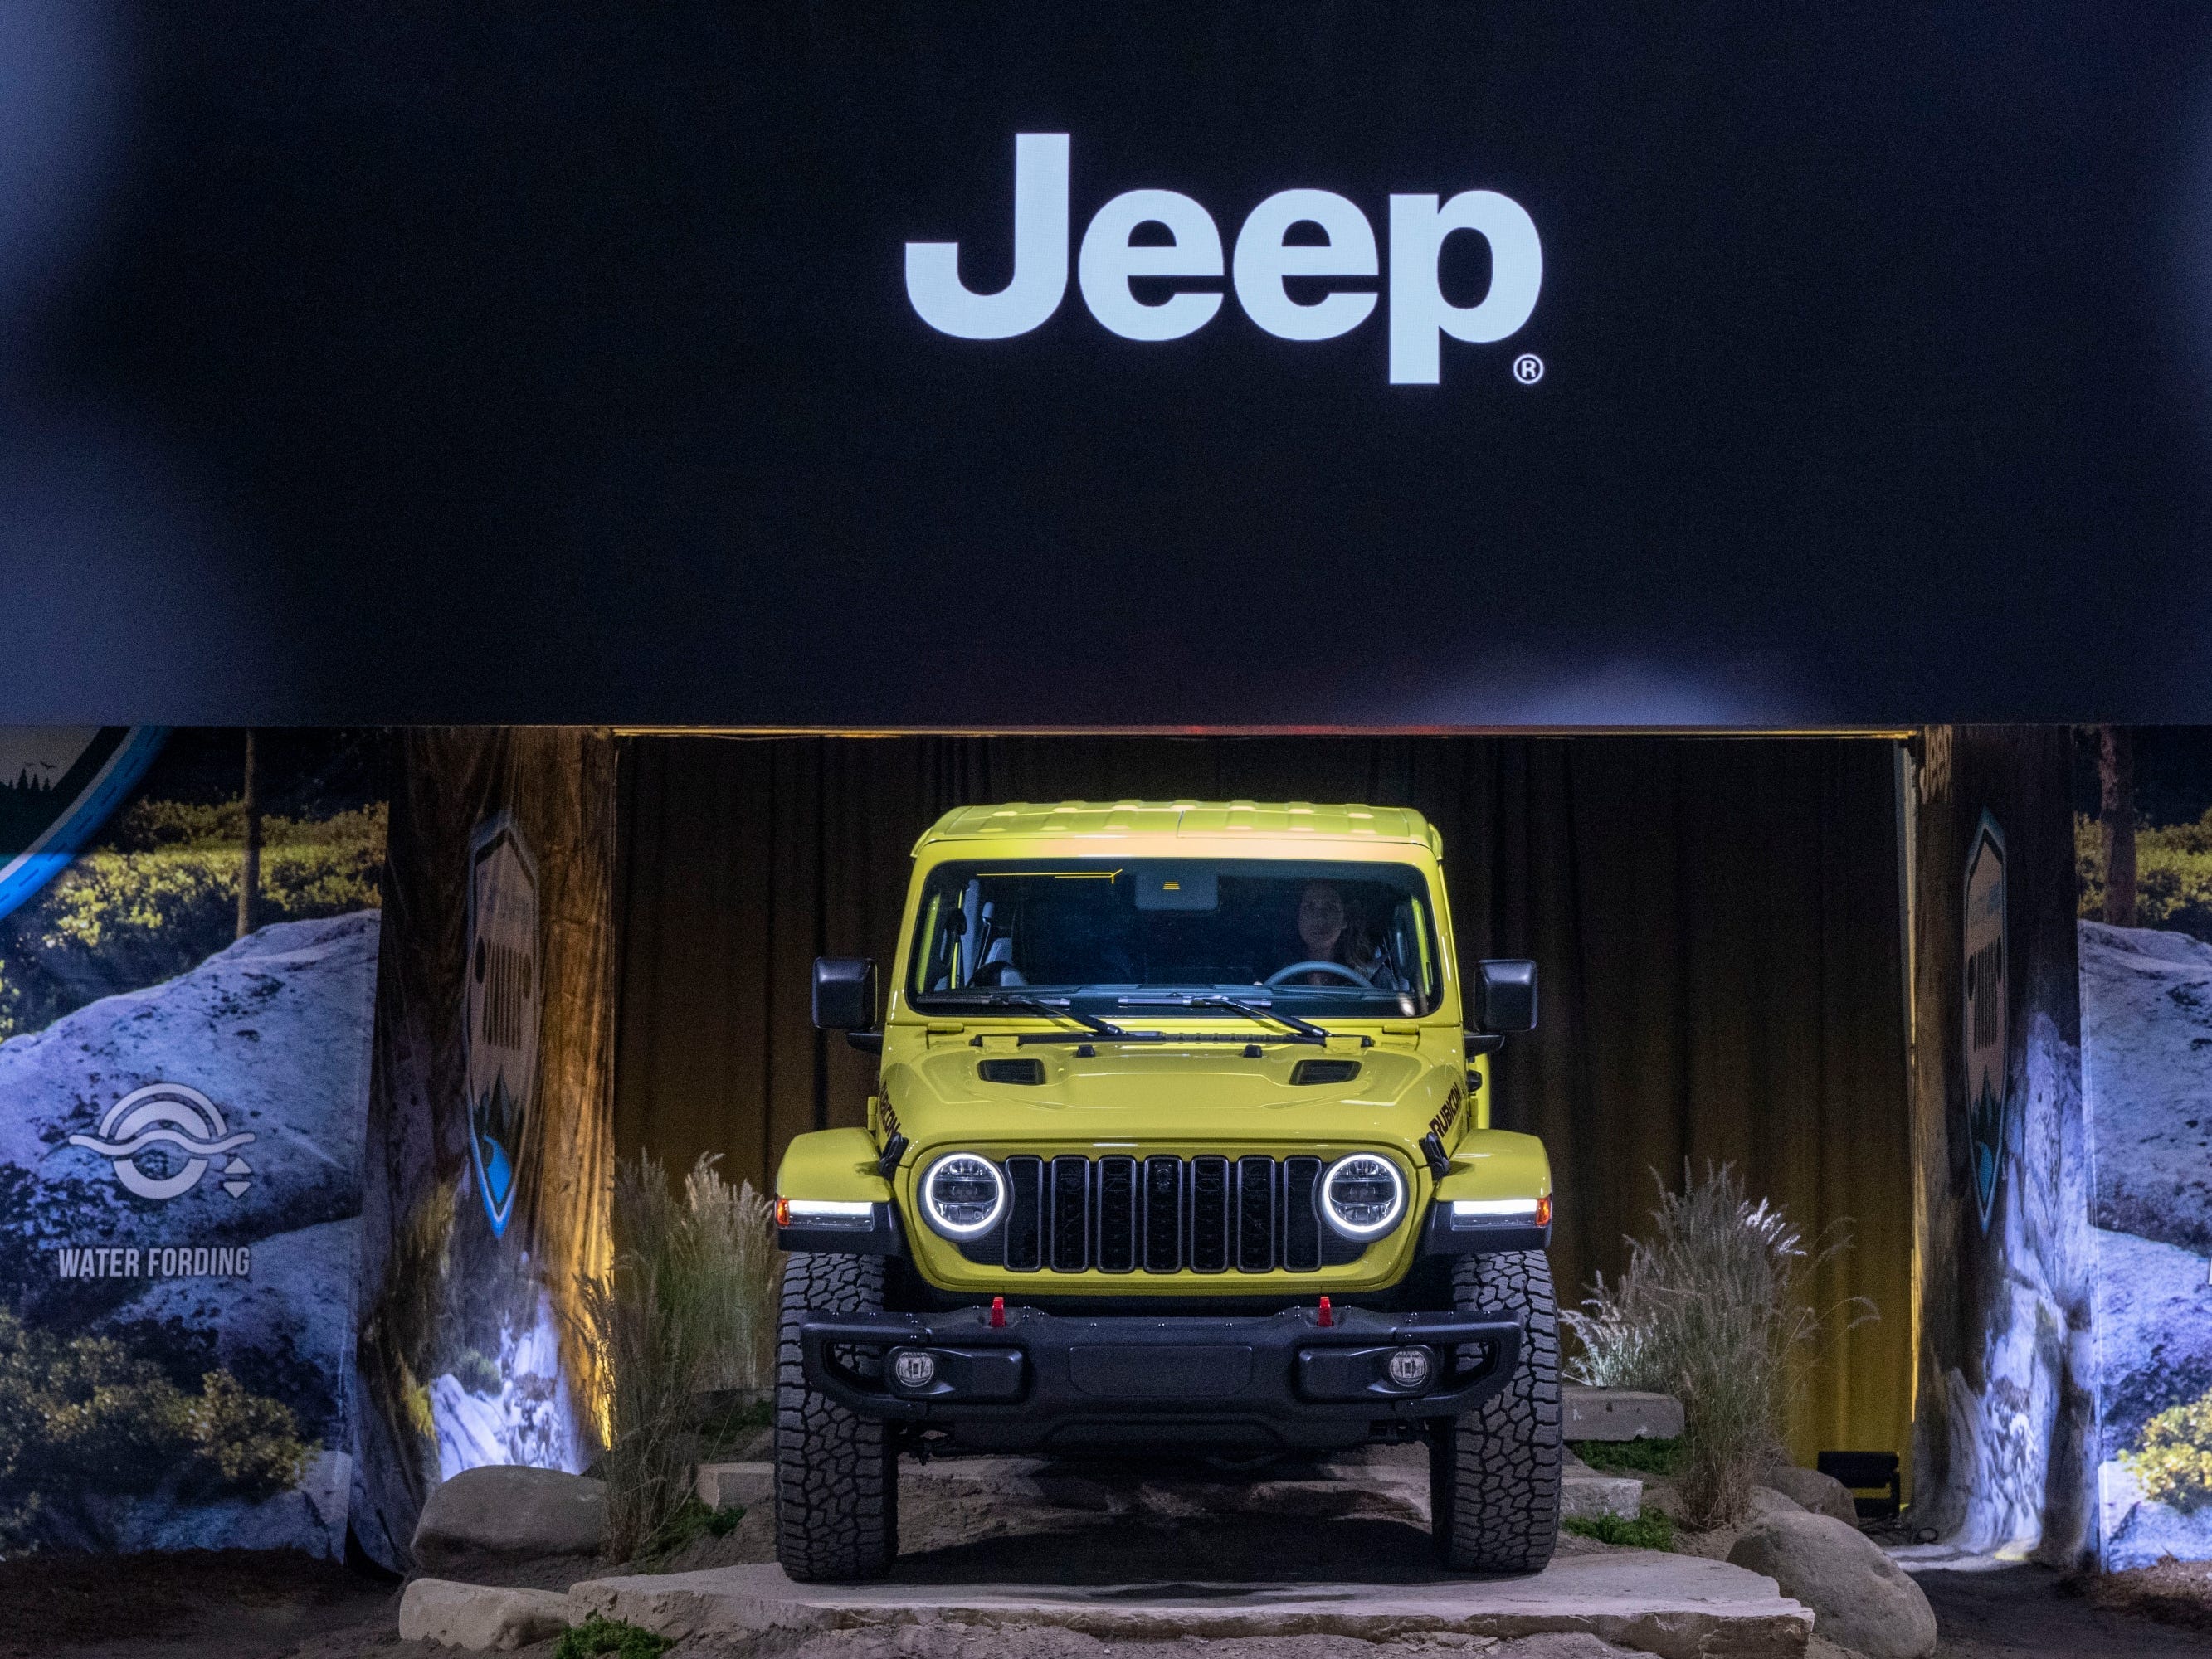 Unter einem großen schwarzen Jeep-Schild wird ein gelber SUV enthüllt.